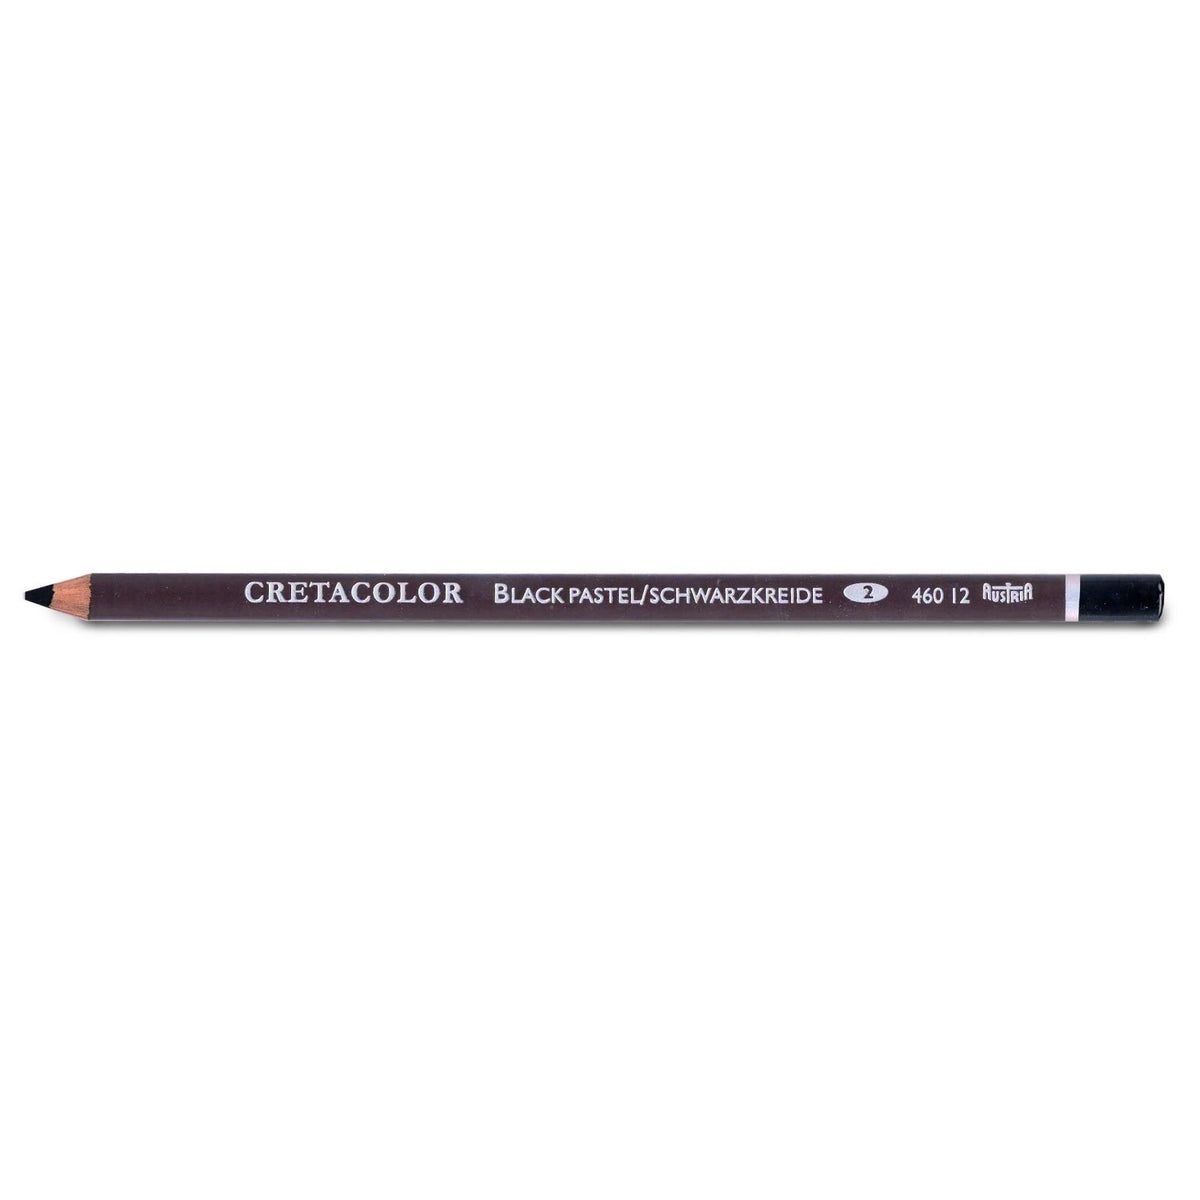 Cretacolor Extra Dark Black Pastel Pencil